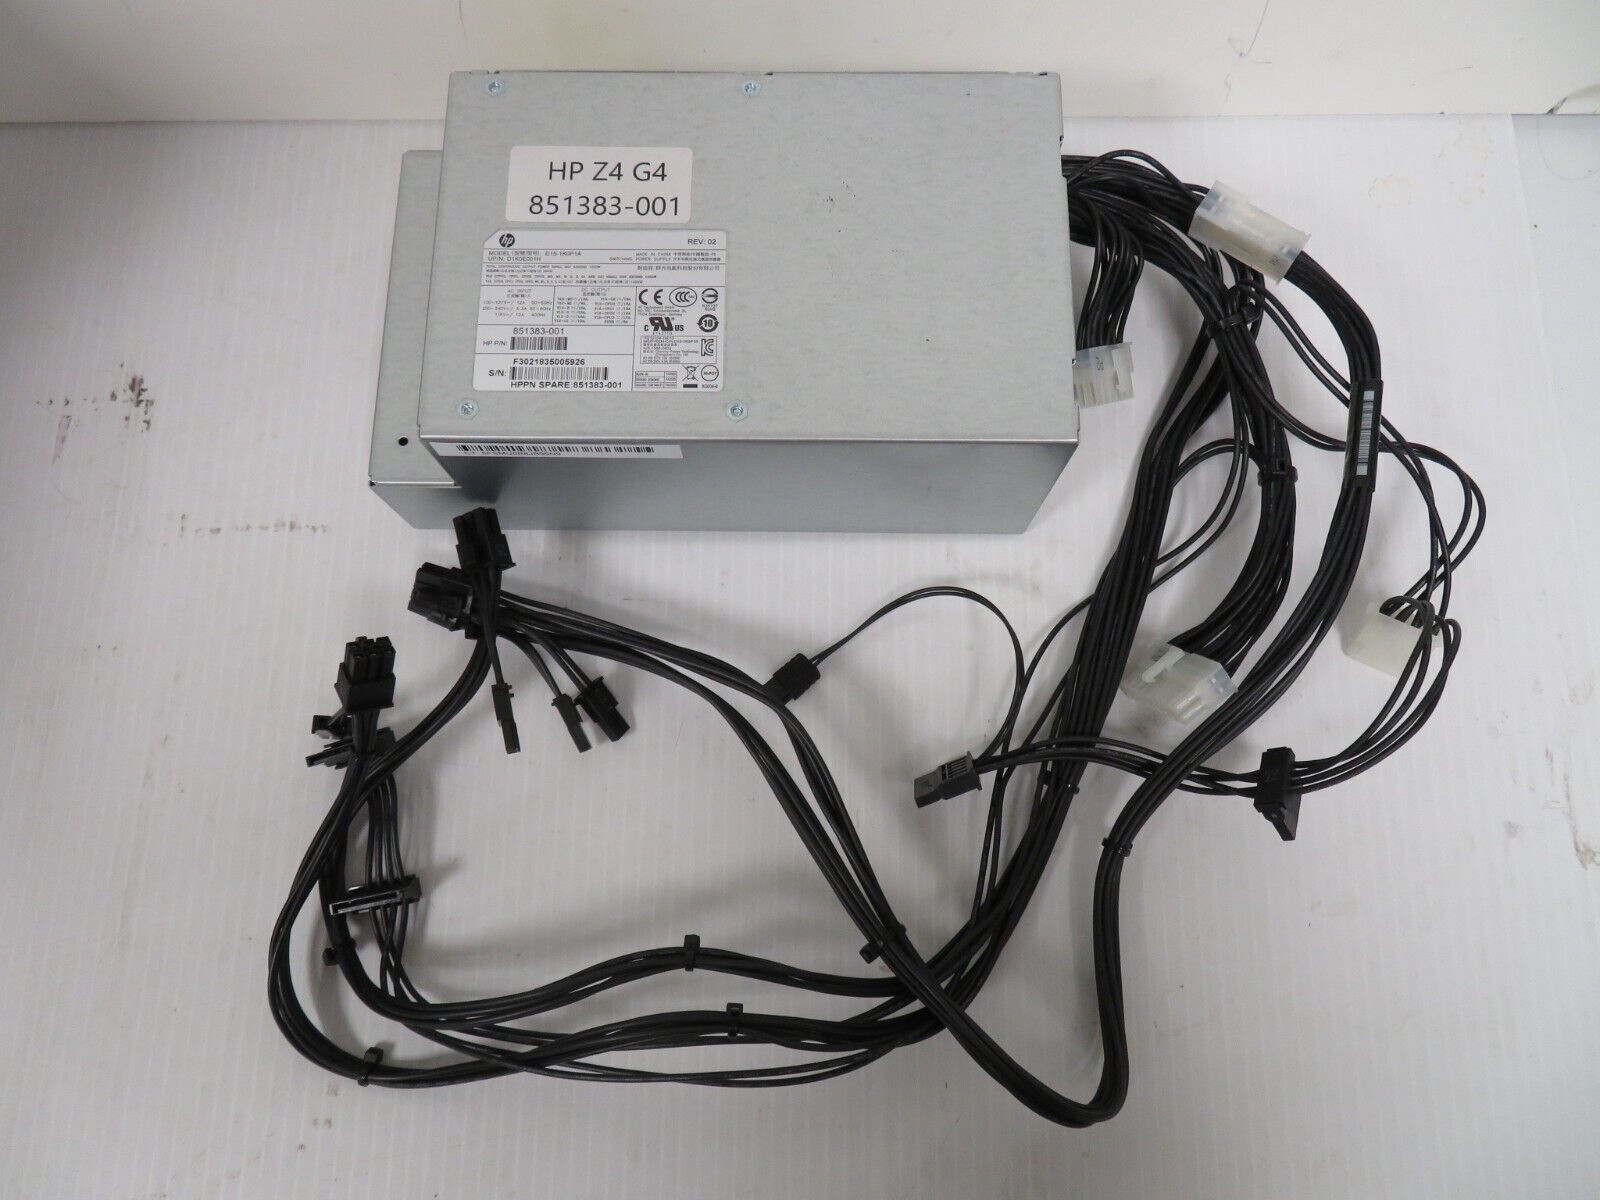 HP Z4 G4 1000W Power Supply - D15-1K0P1A 851383-001